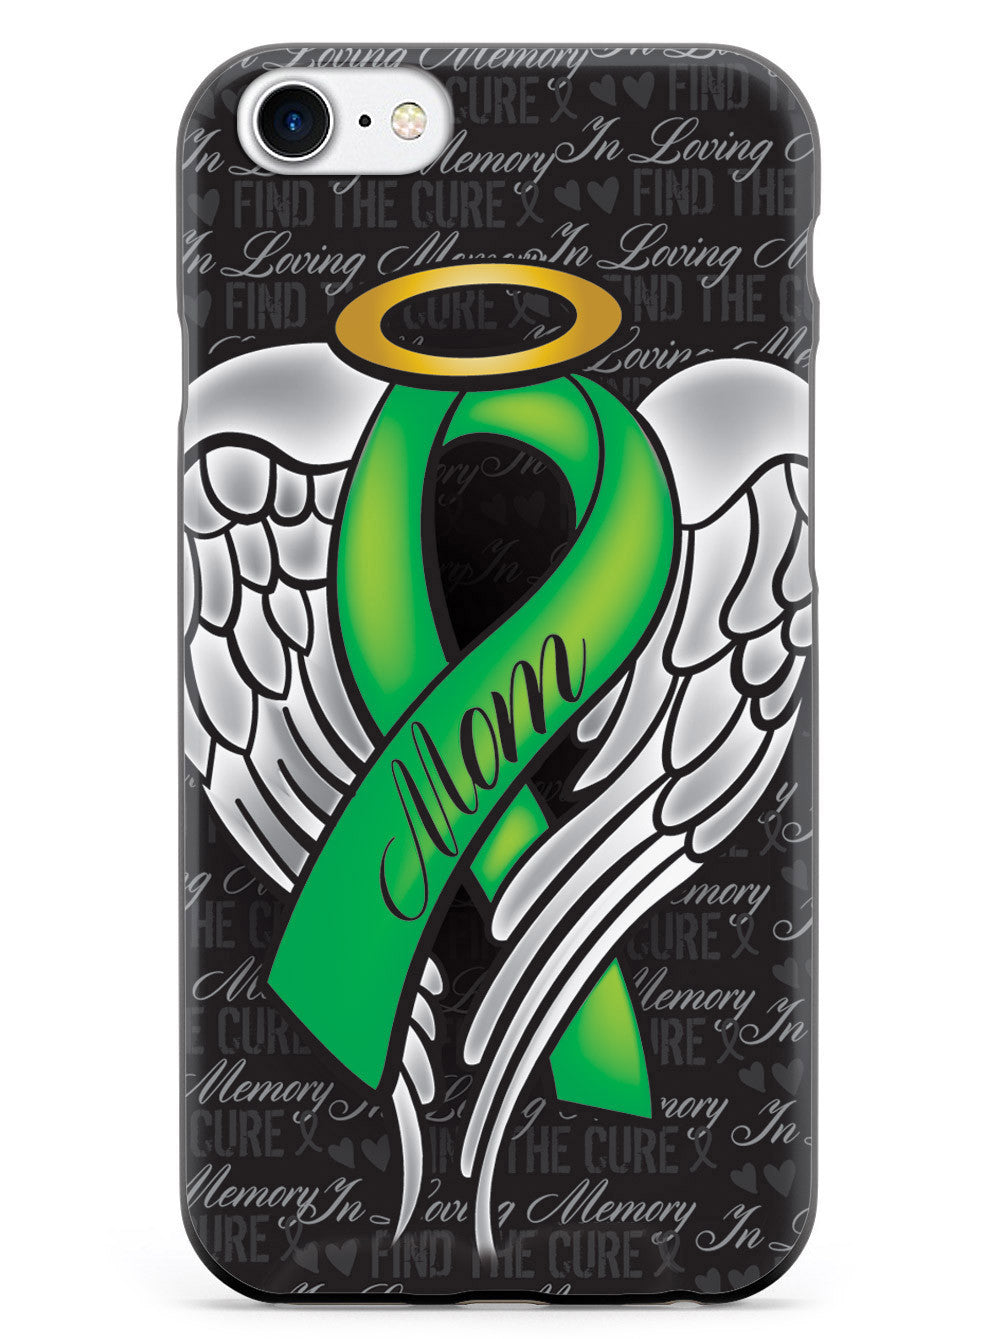 In Loving Memory of My Mom - Green Ribbon Case